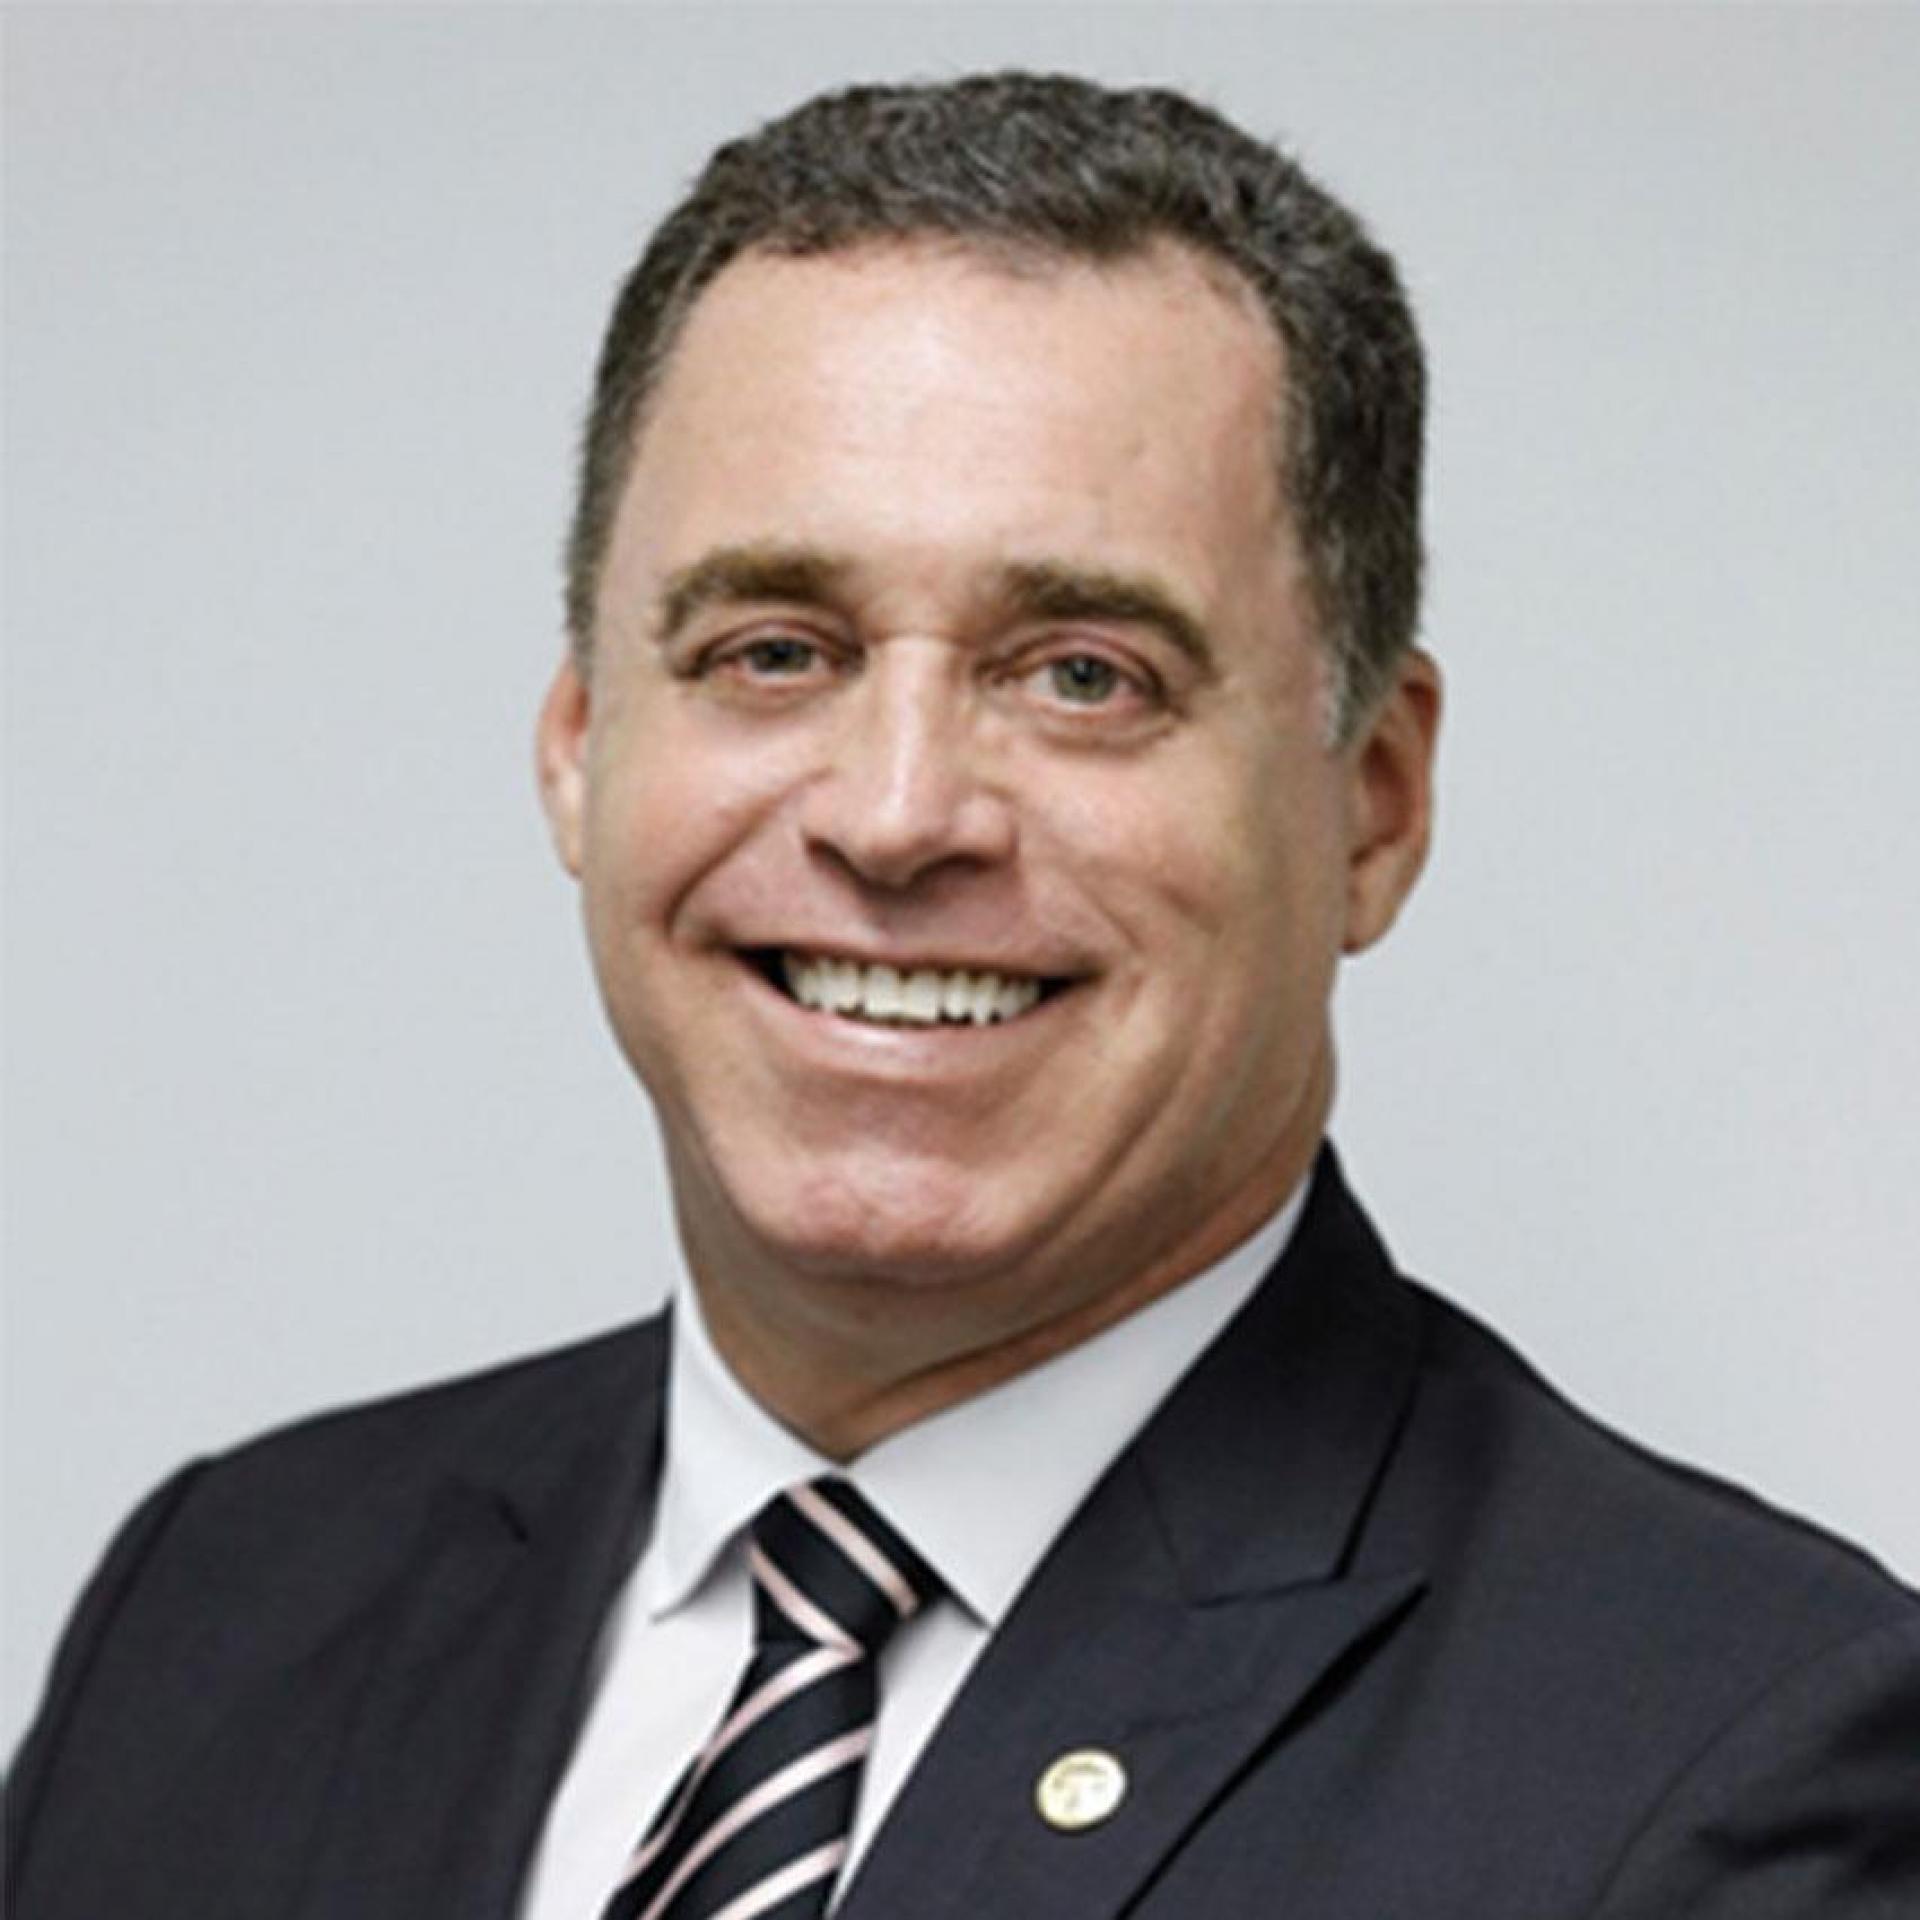 Min. Evandro Pereira Valadão Lopes